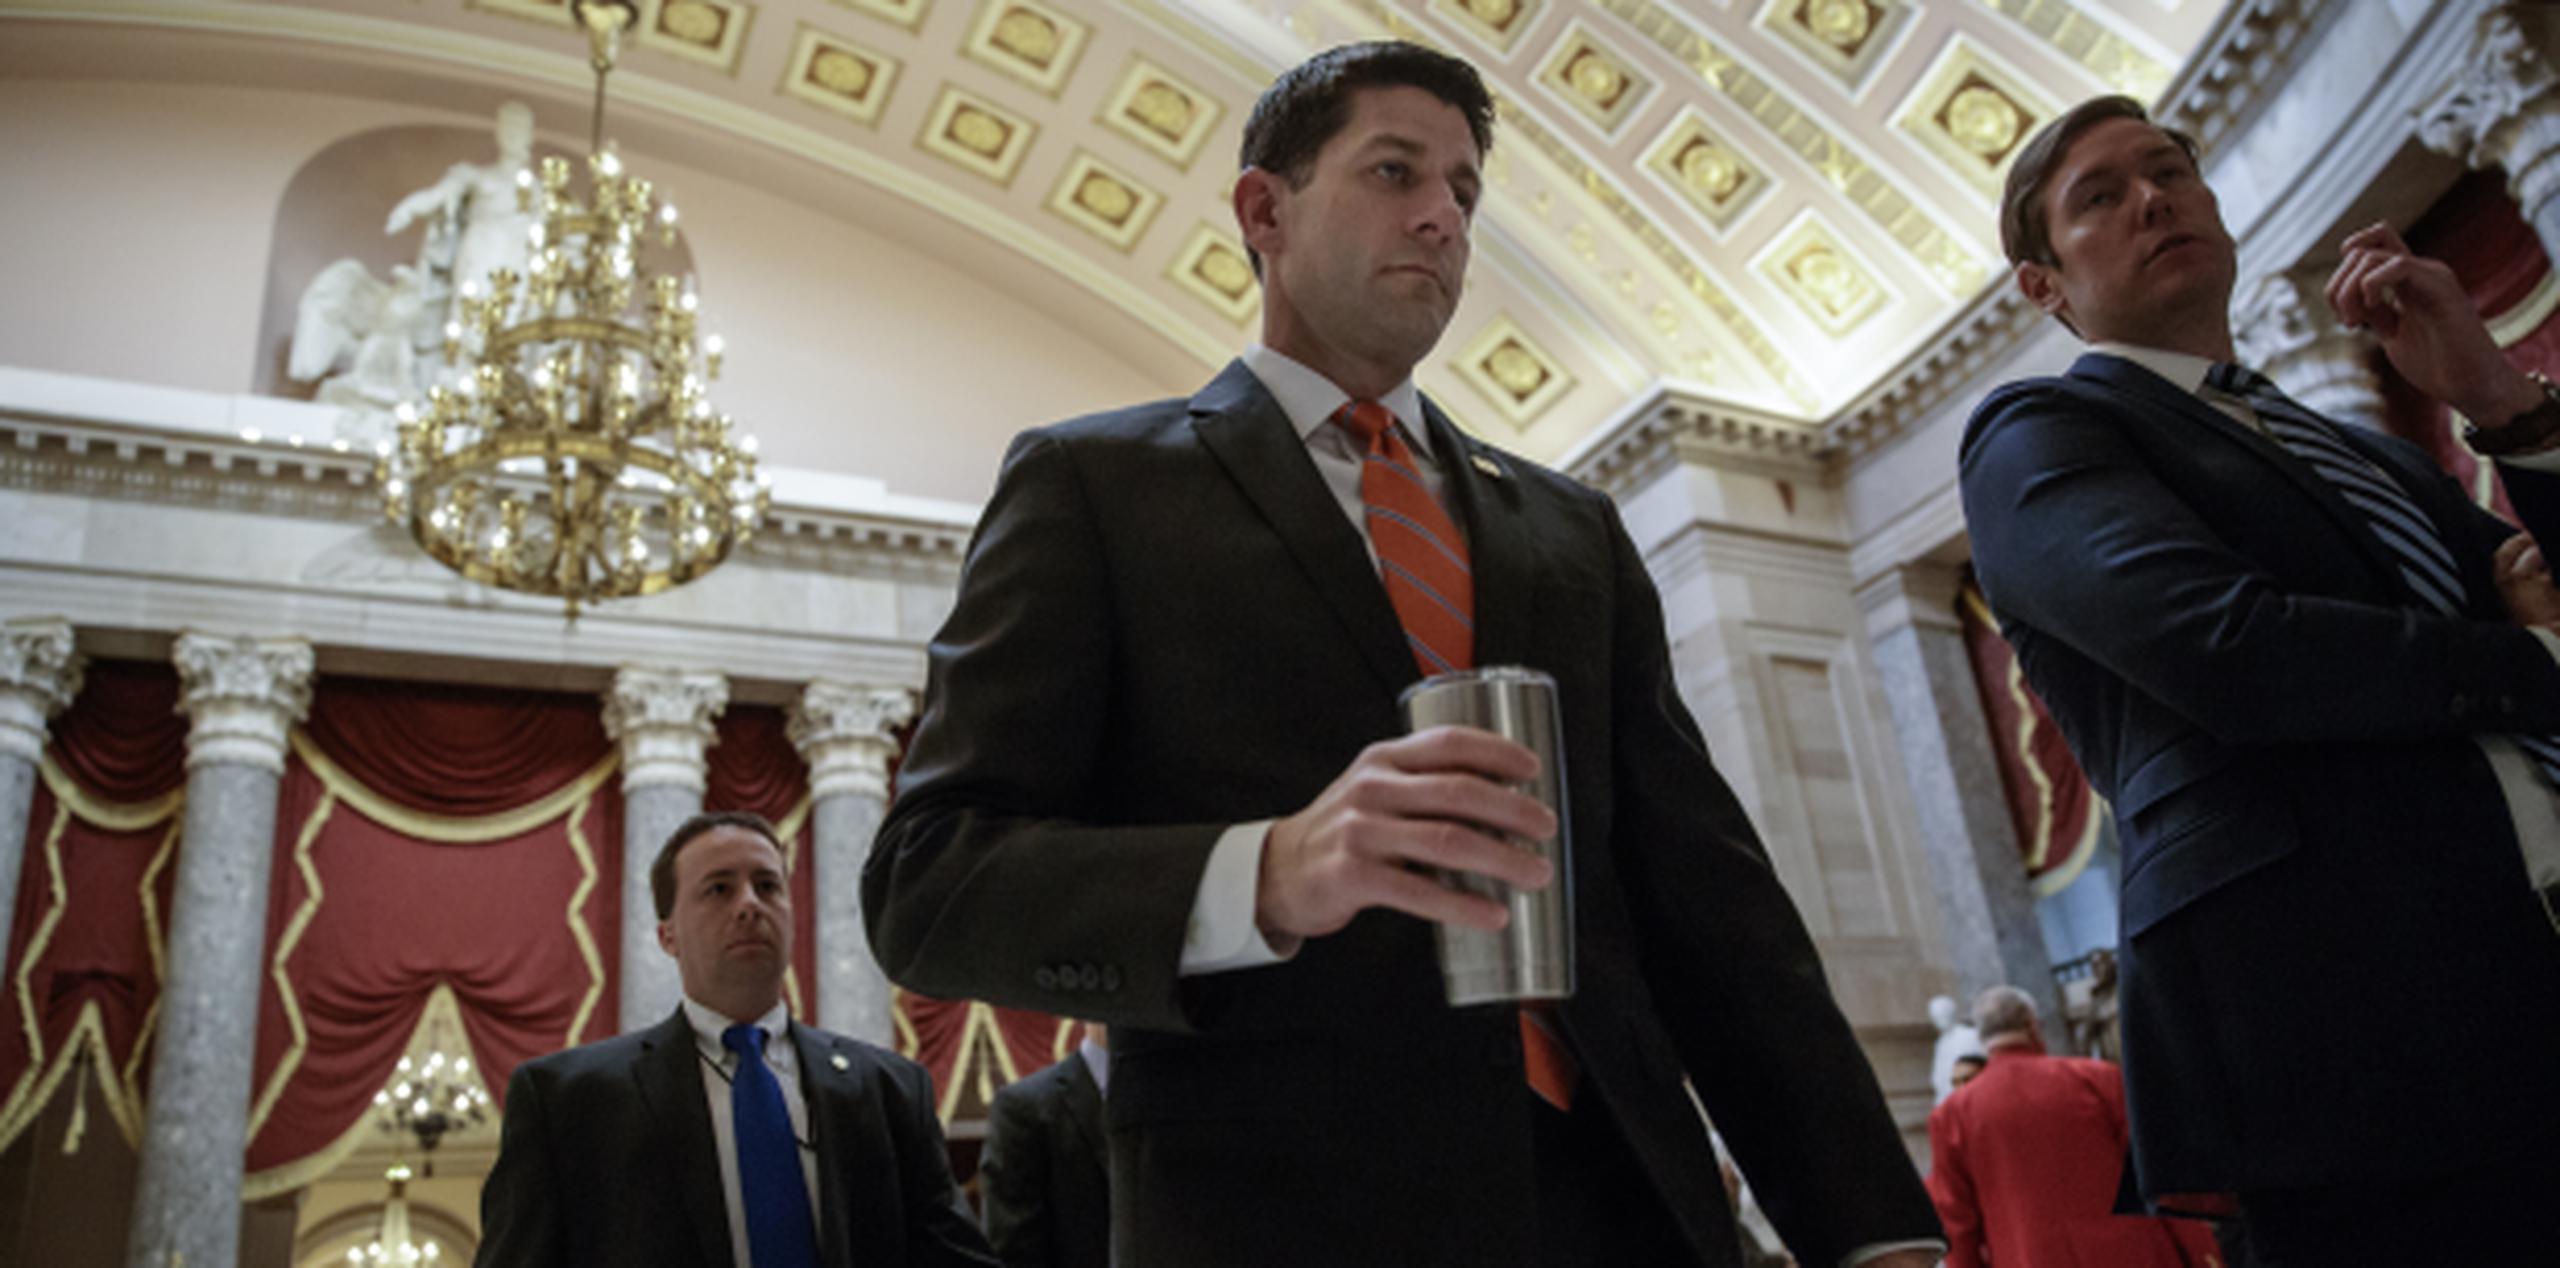 El líder republicano en la Cámara de Representantes, Paul Ryan, no consiguió reunir los votos suficientes para que se aprobara la medida que eliminaría y remplazaría el Obamacare. (APo/J. Scott Applewhite)
